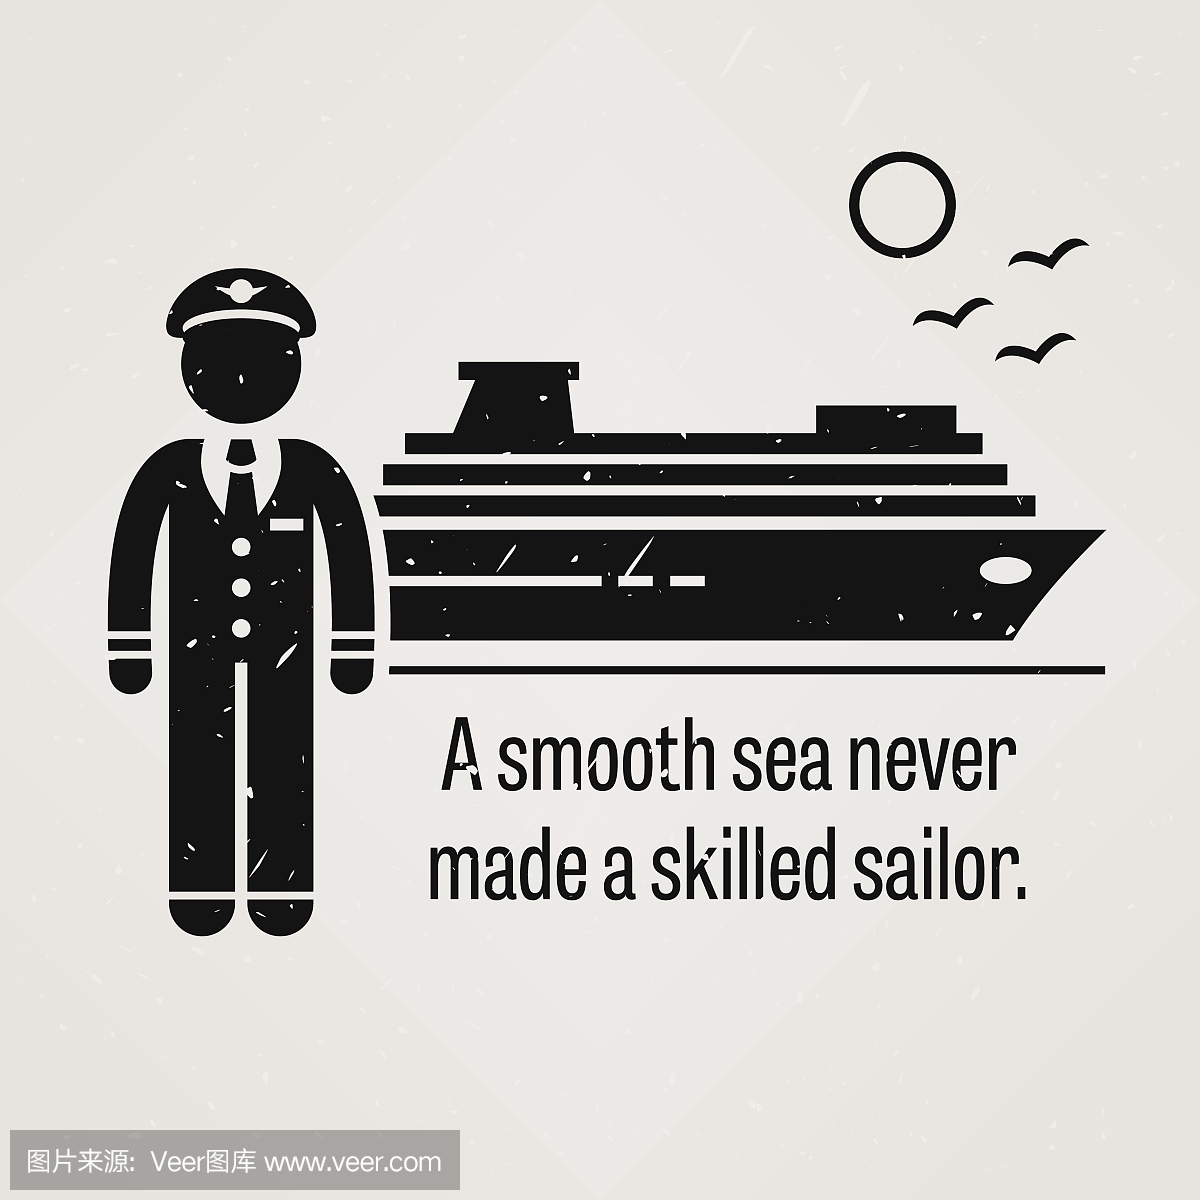 谚语 - 光滑的海没有成为熟练的水手